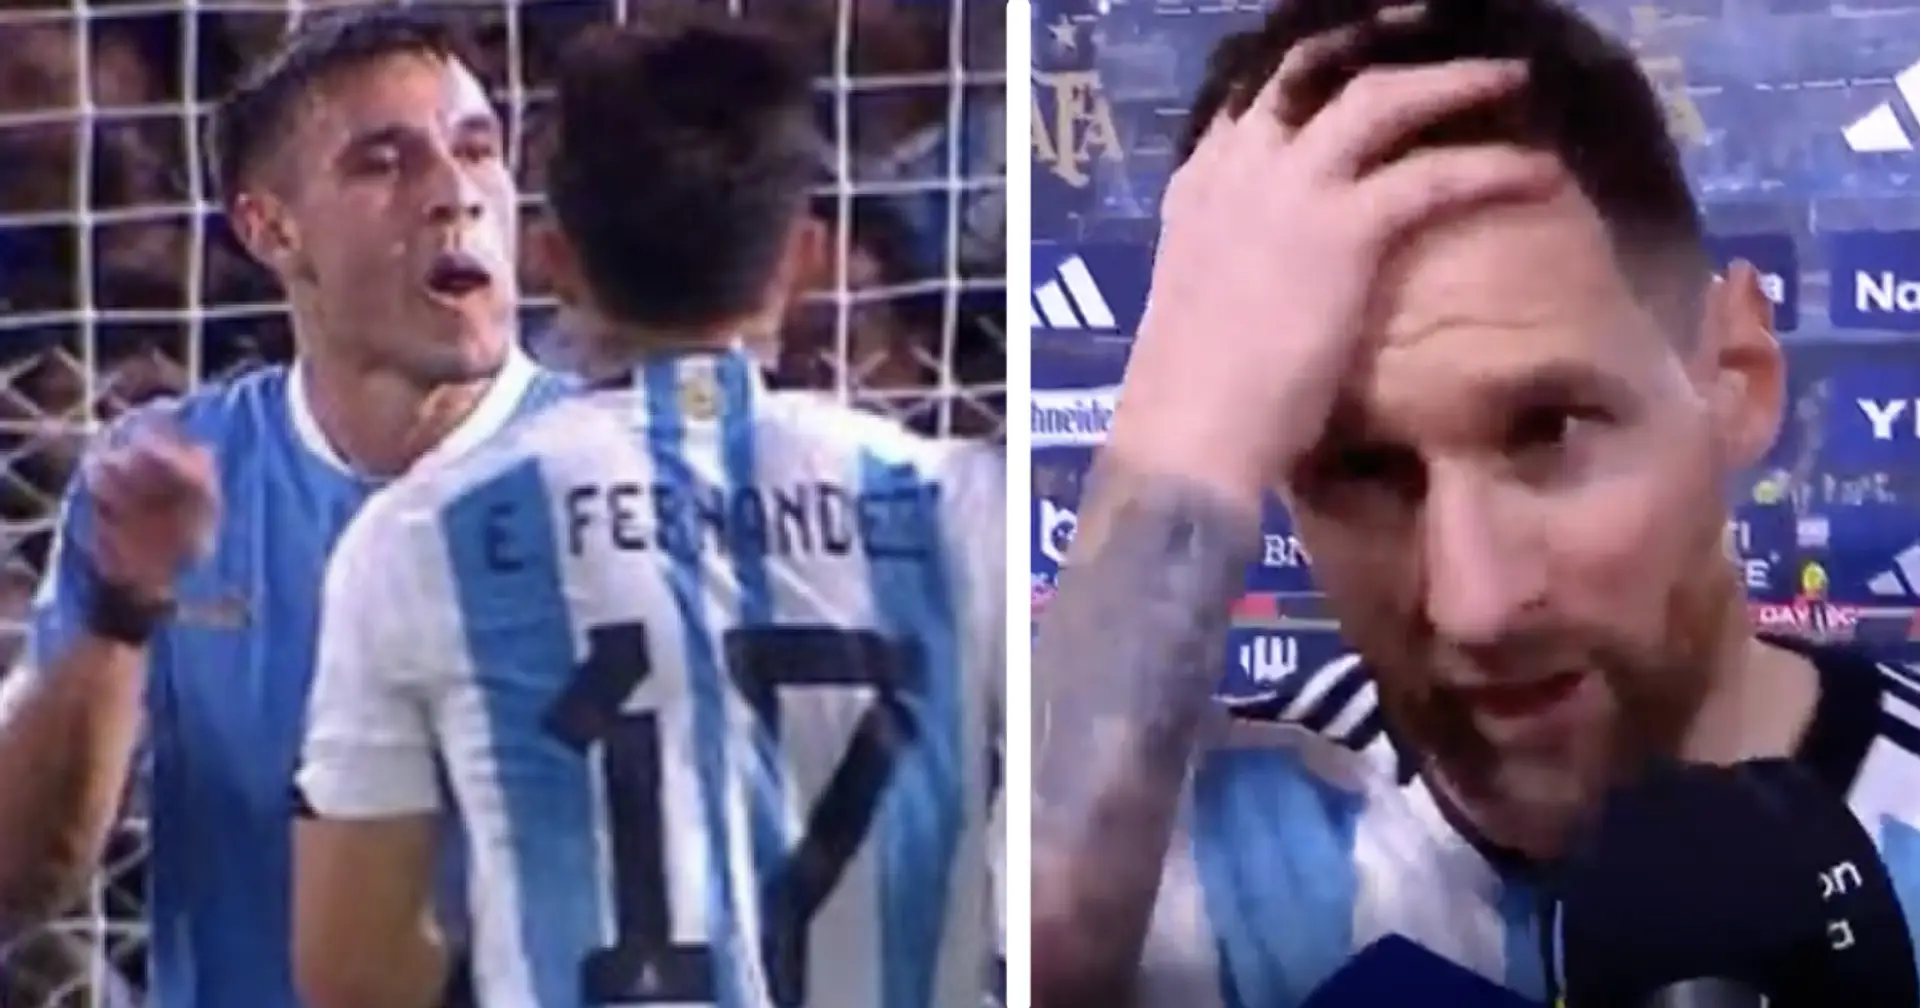 "Je préfère ne pas dire ce que je pense vraiment": Messi réagit alors qu'un milieu de terrain uruguayen qualifie De Paul Leo de "su**eur de b**es"